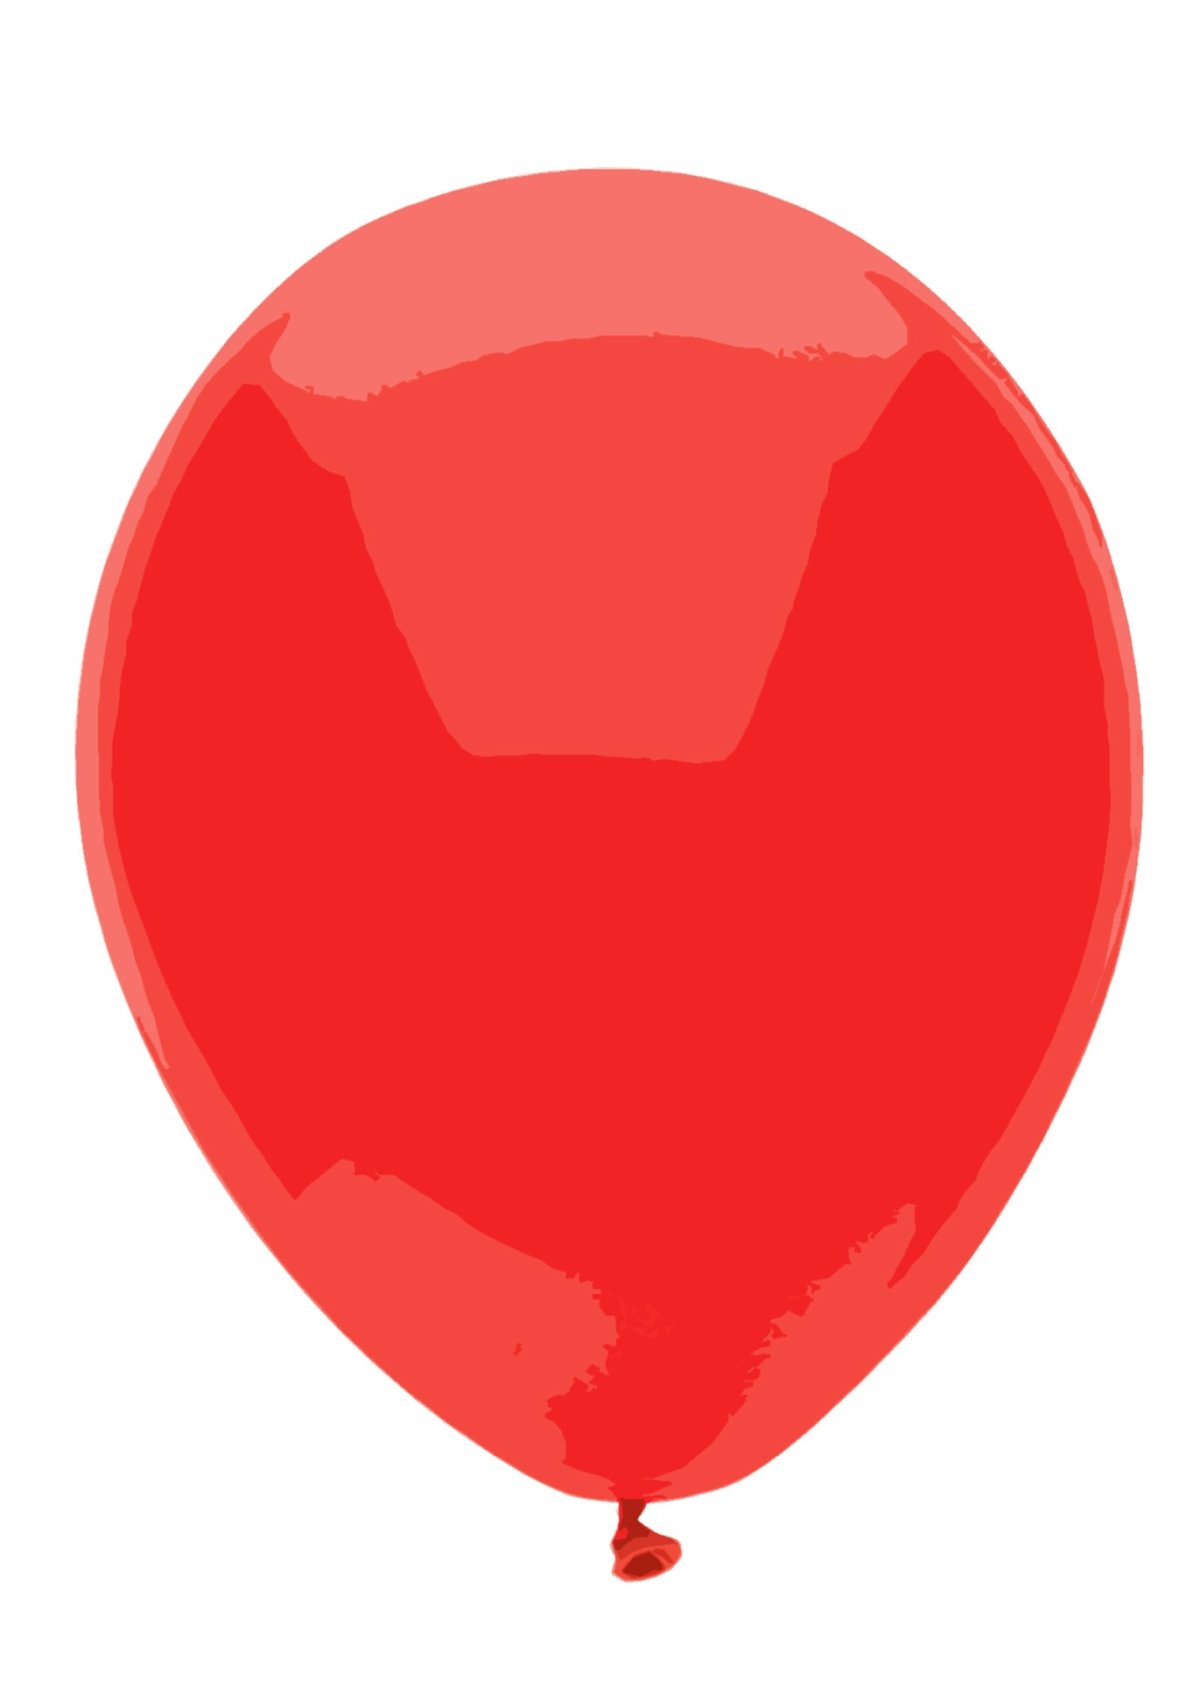 Красный шарик нарисованный